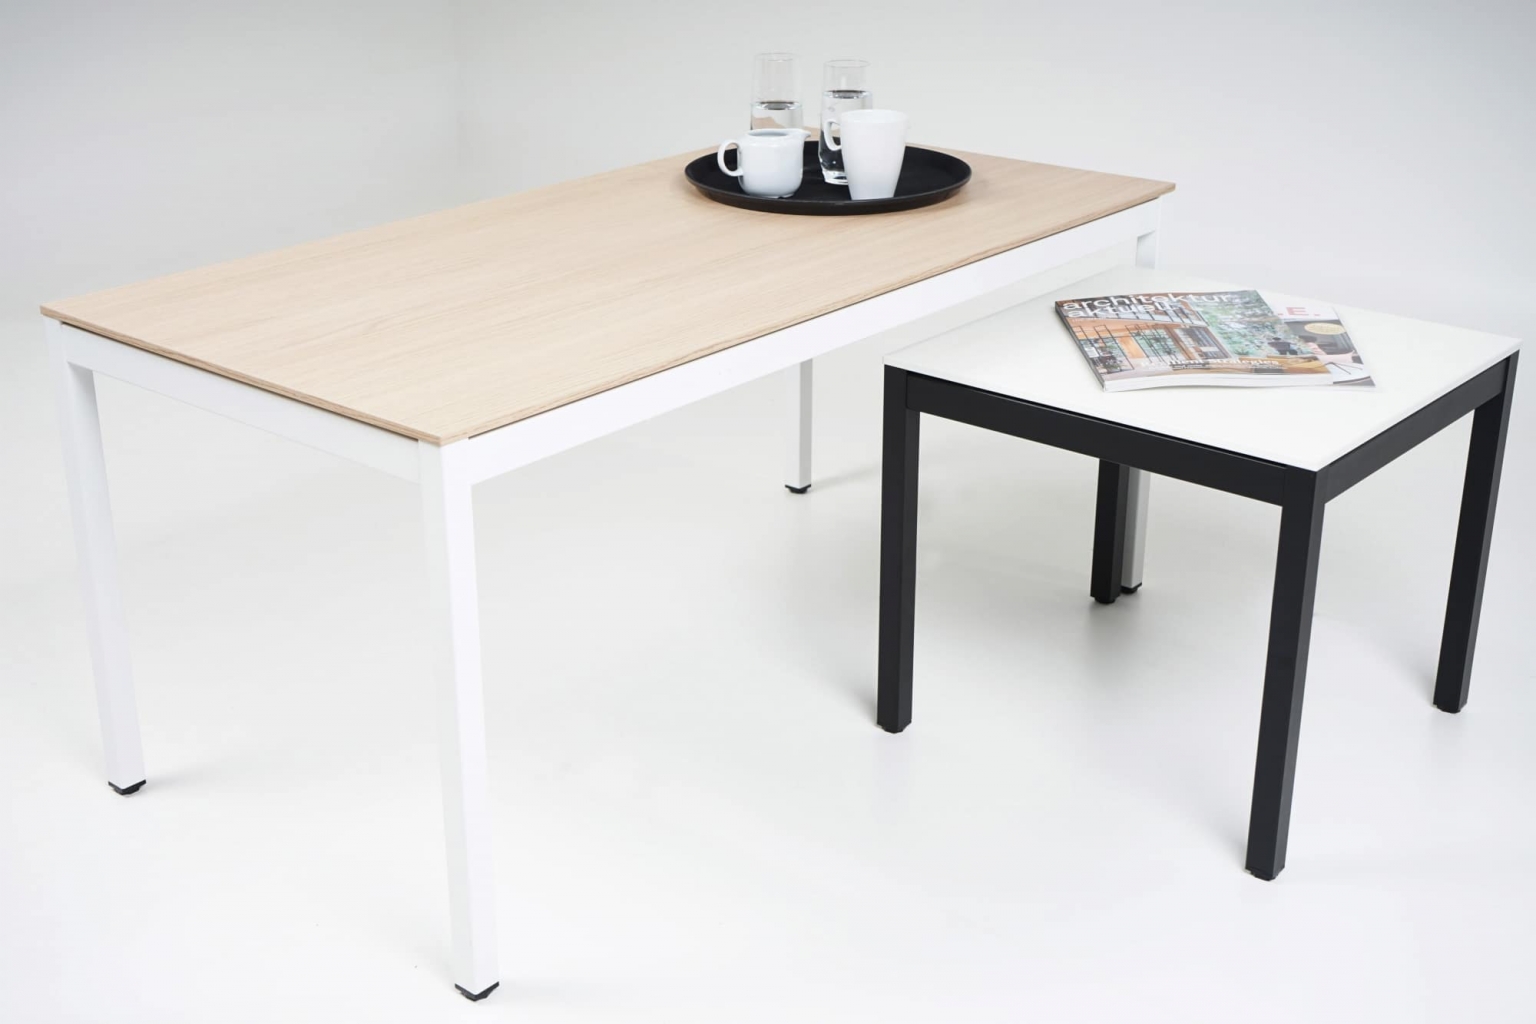 Couchtische in 2 verschiedene Höhen mit Tischgestellen in weiß und schwarz sowie Tischplatten in weiß und Holzoptik.